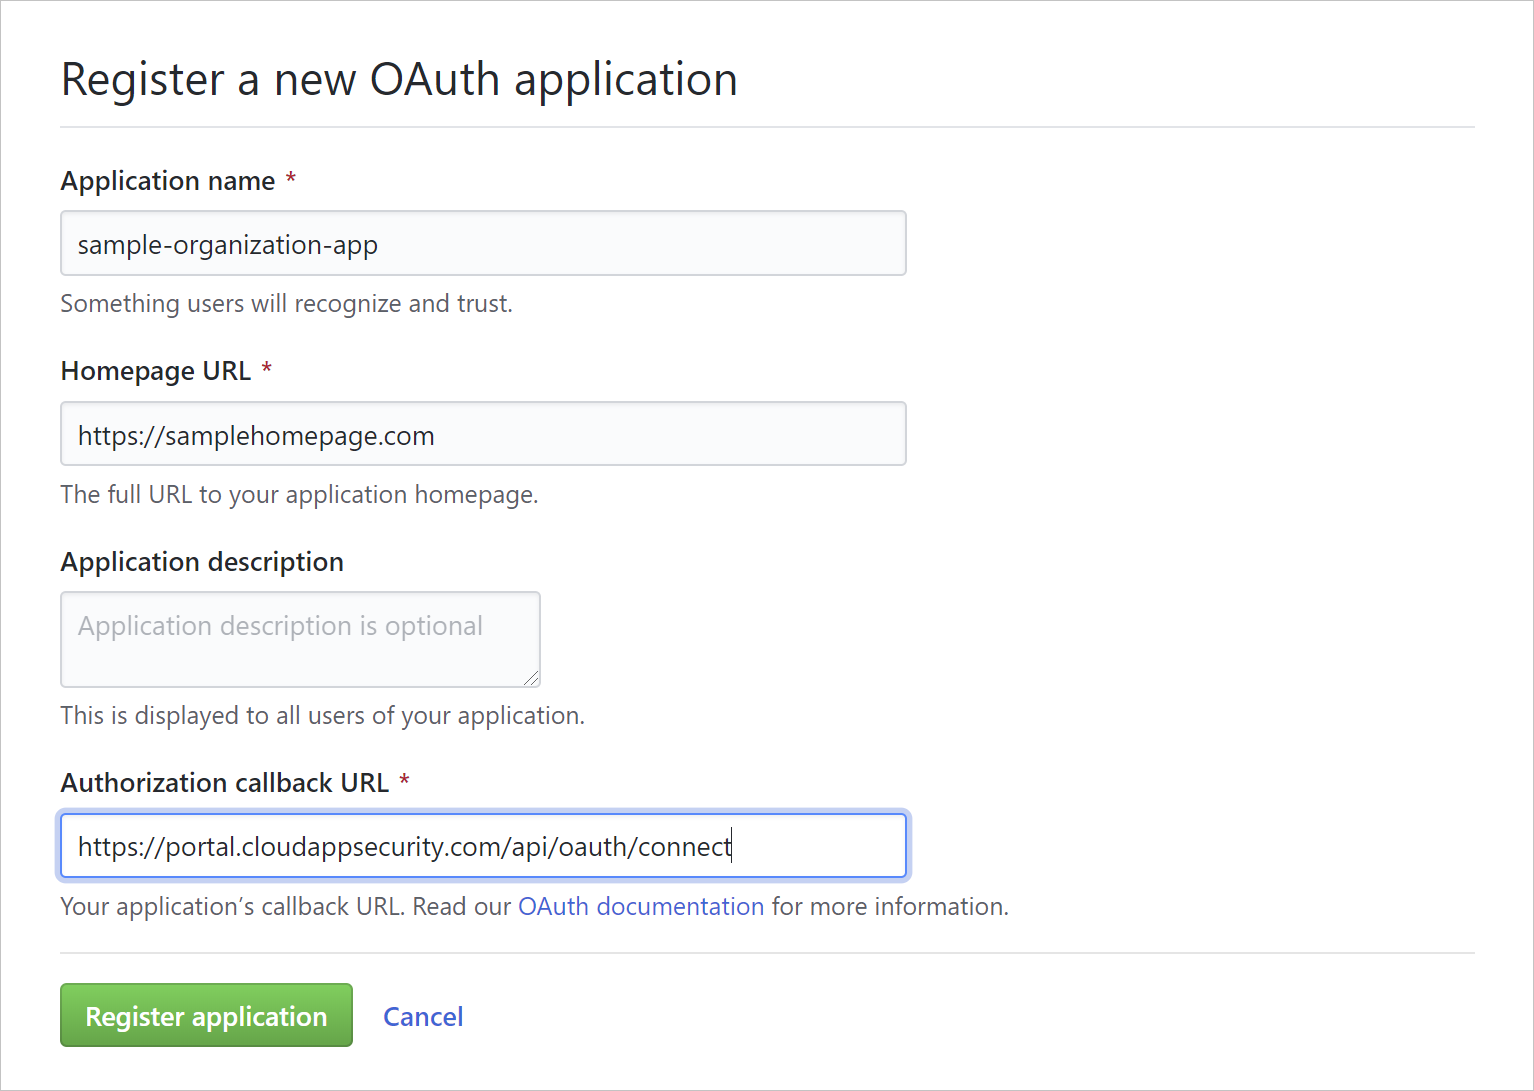 显示注册 oauth 应用的屏幕截图。